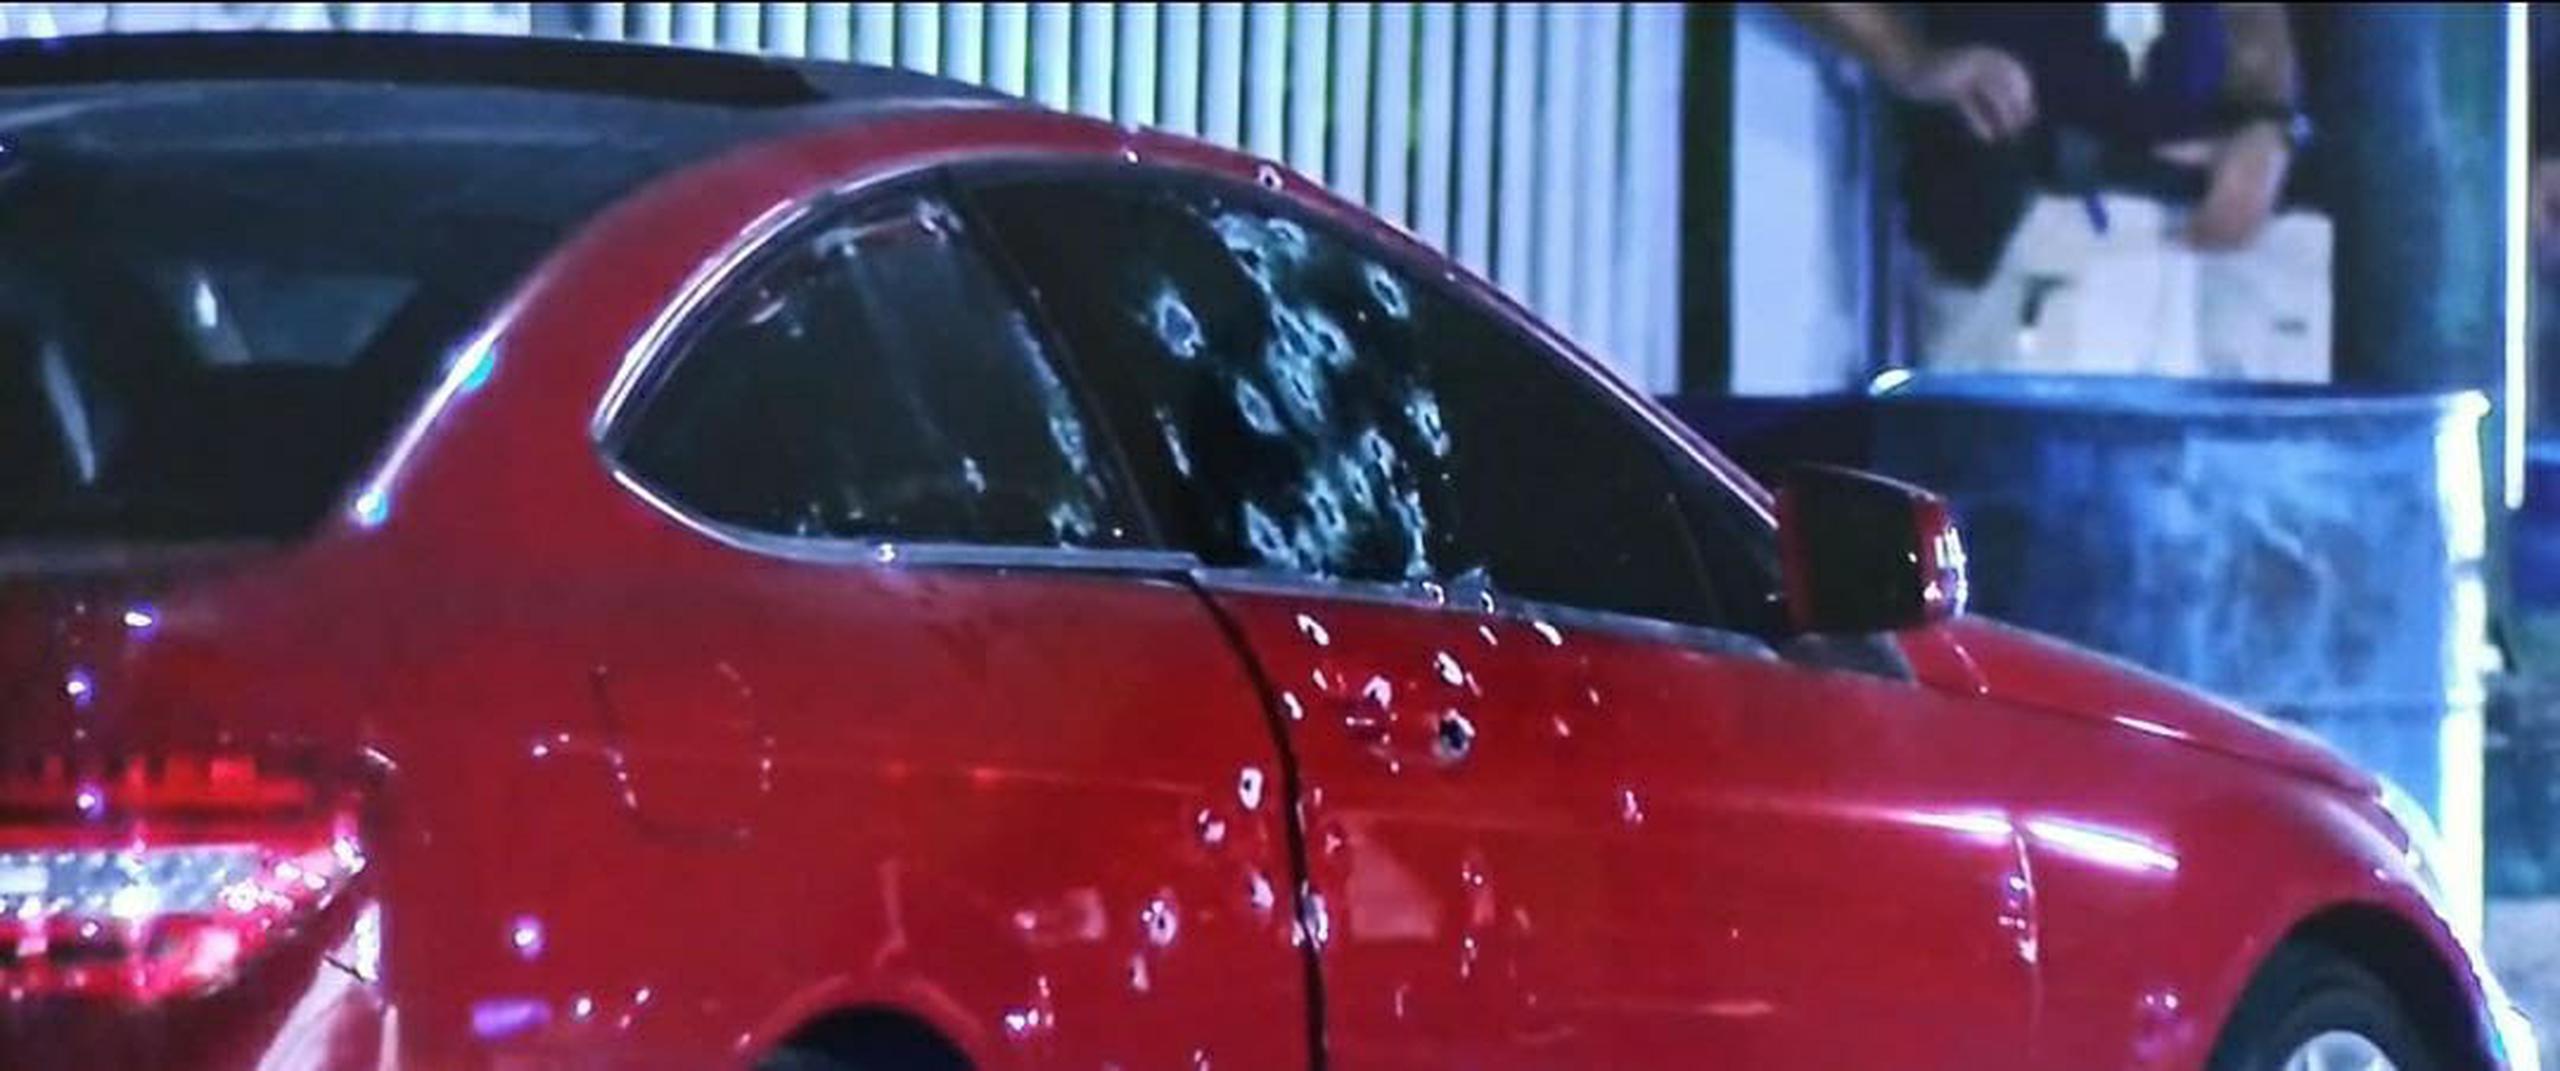 Durante el registro al vehículo Mercedes Benz incautaron droga, balas y dinero.